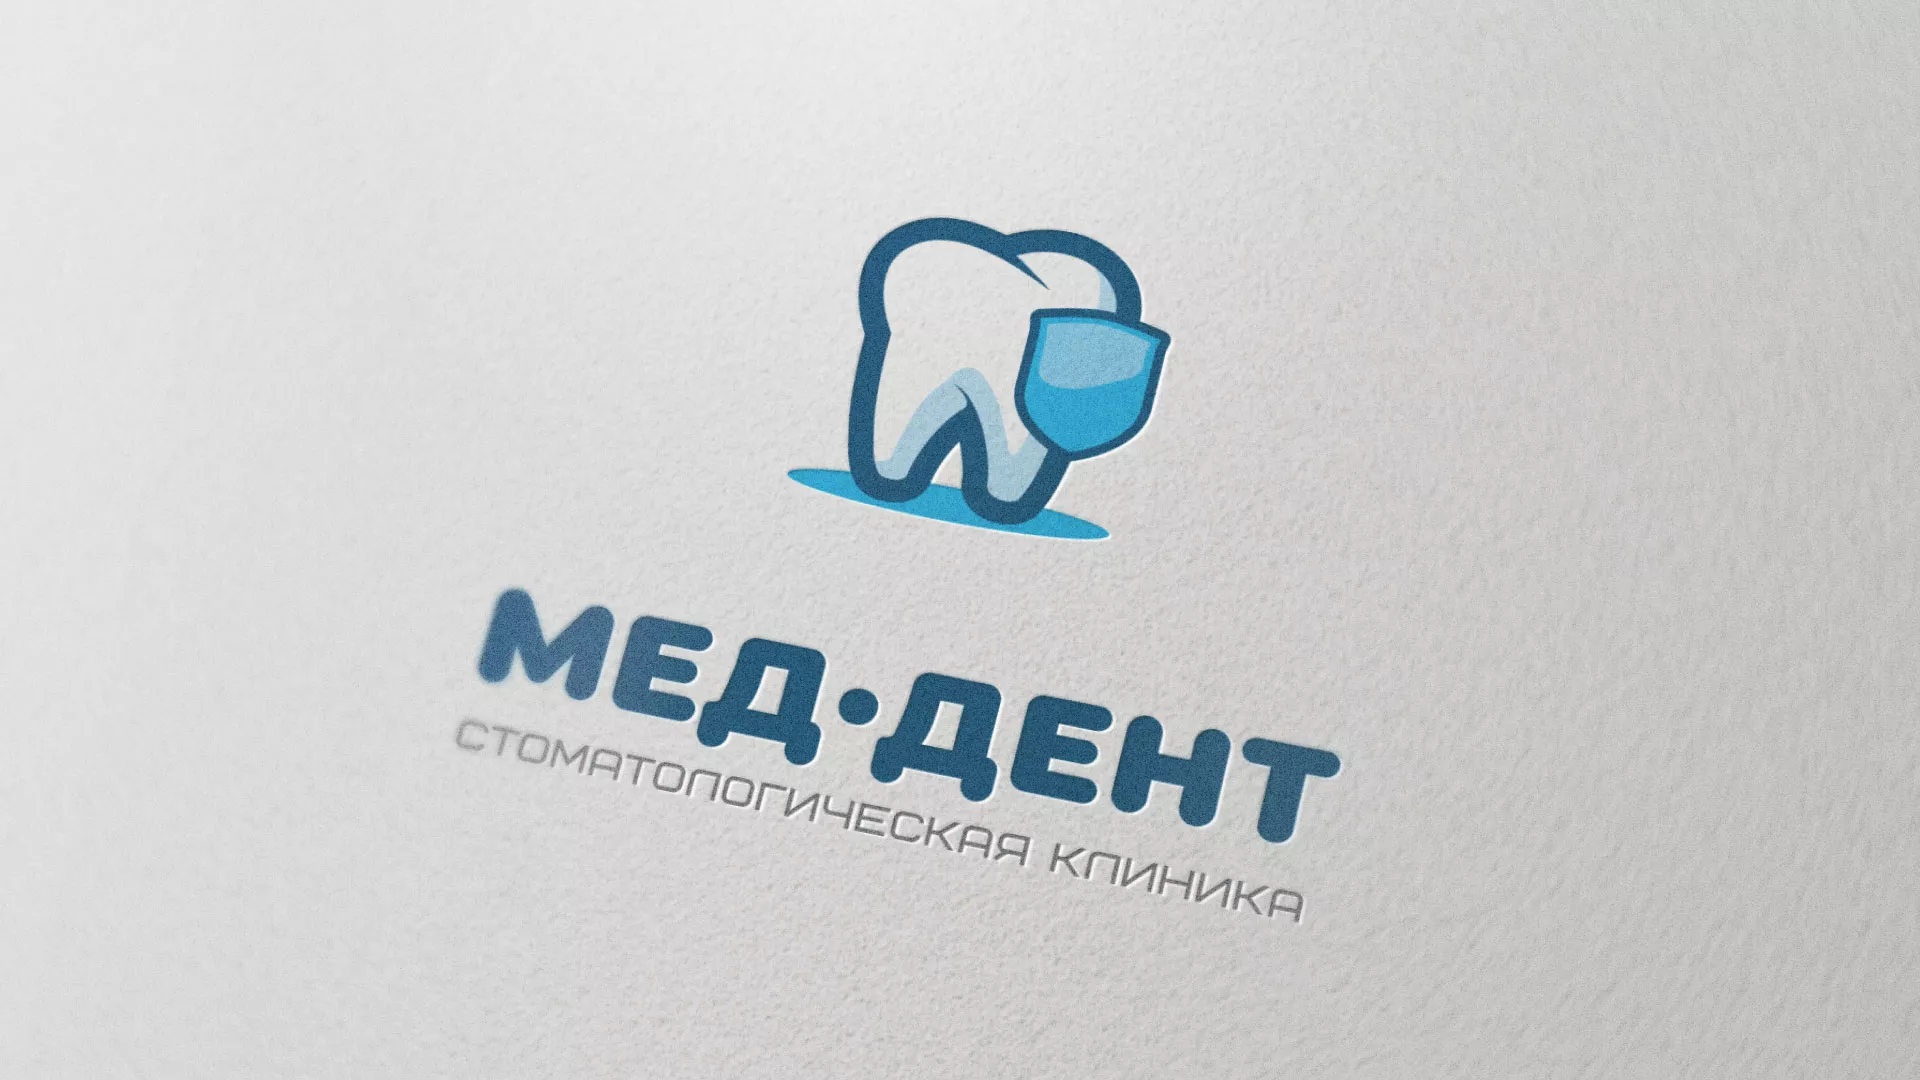 Разработка логотипа стоматологической клиники «МЕД-ДЕНТ» в Щиграх